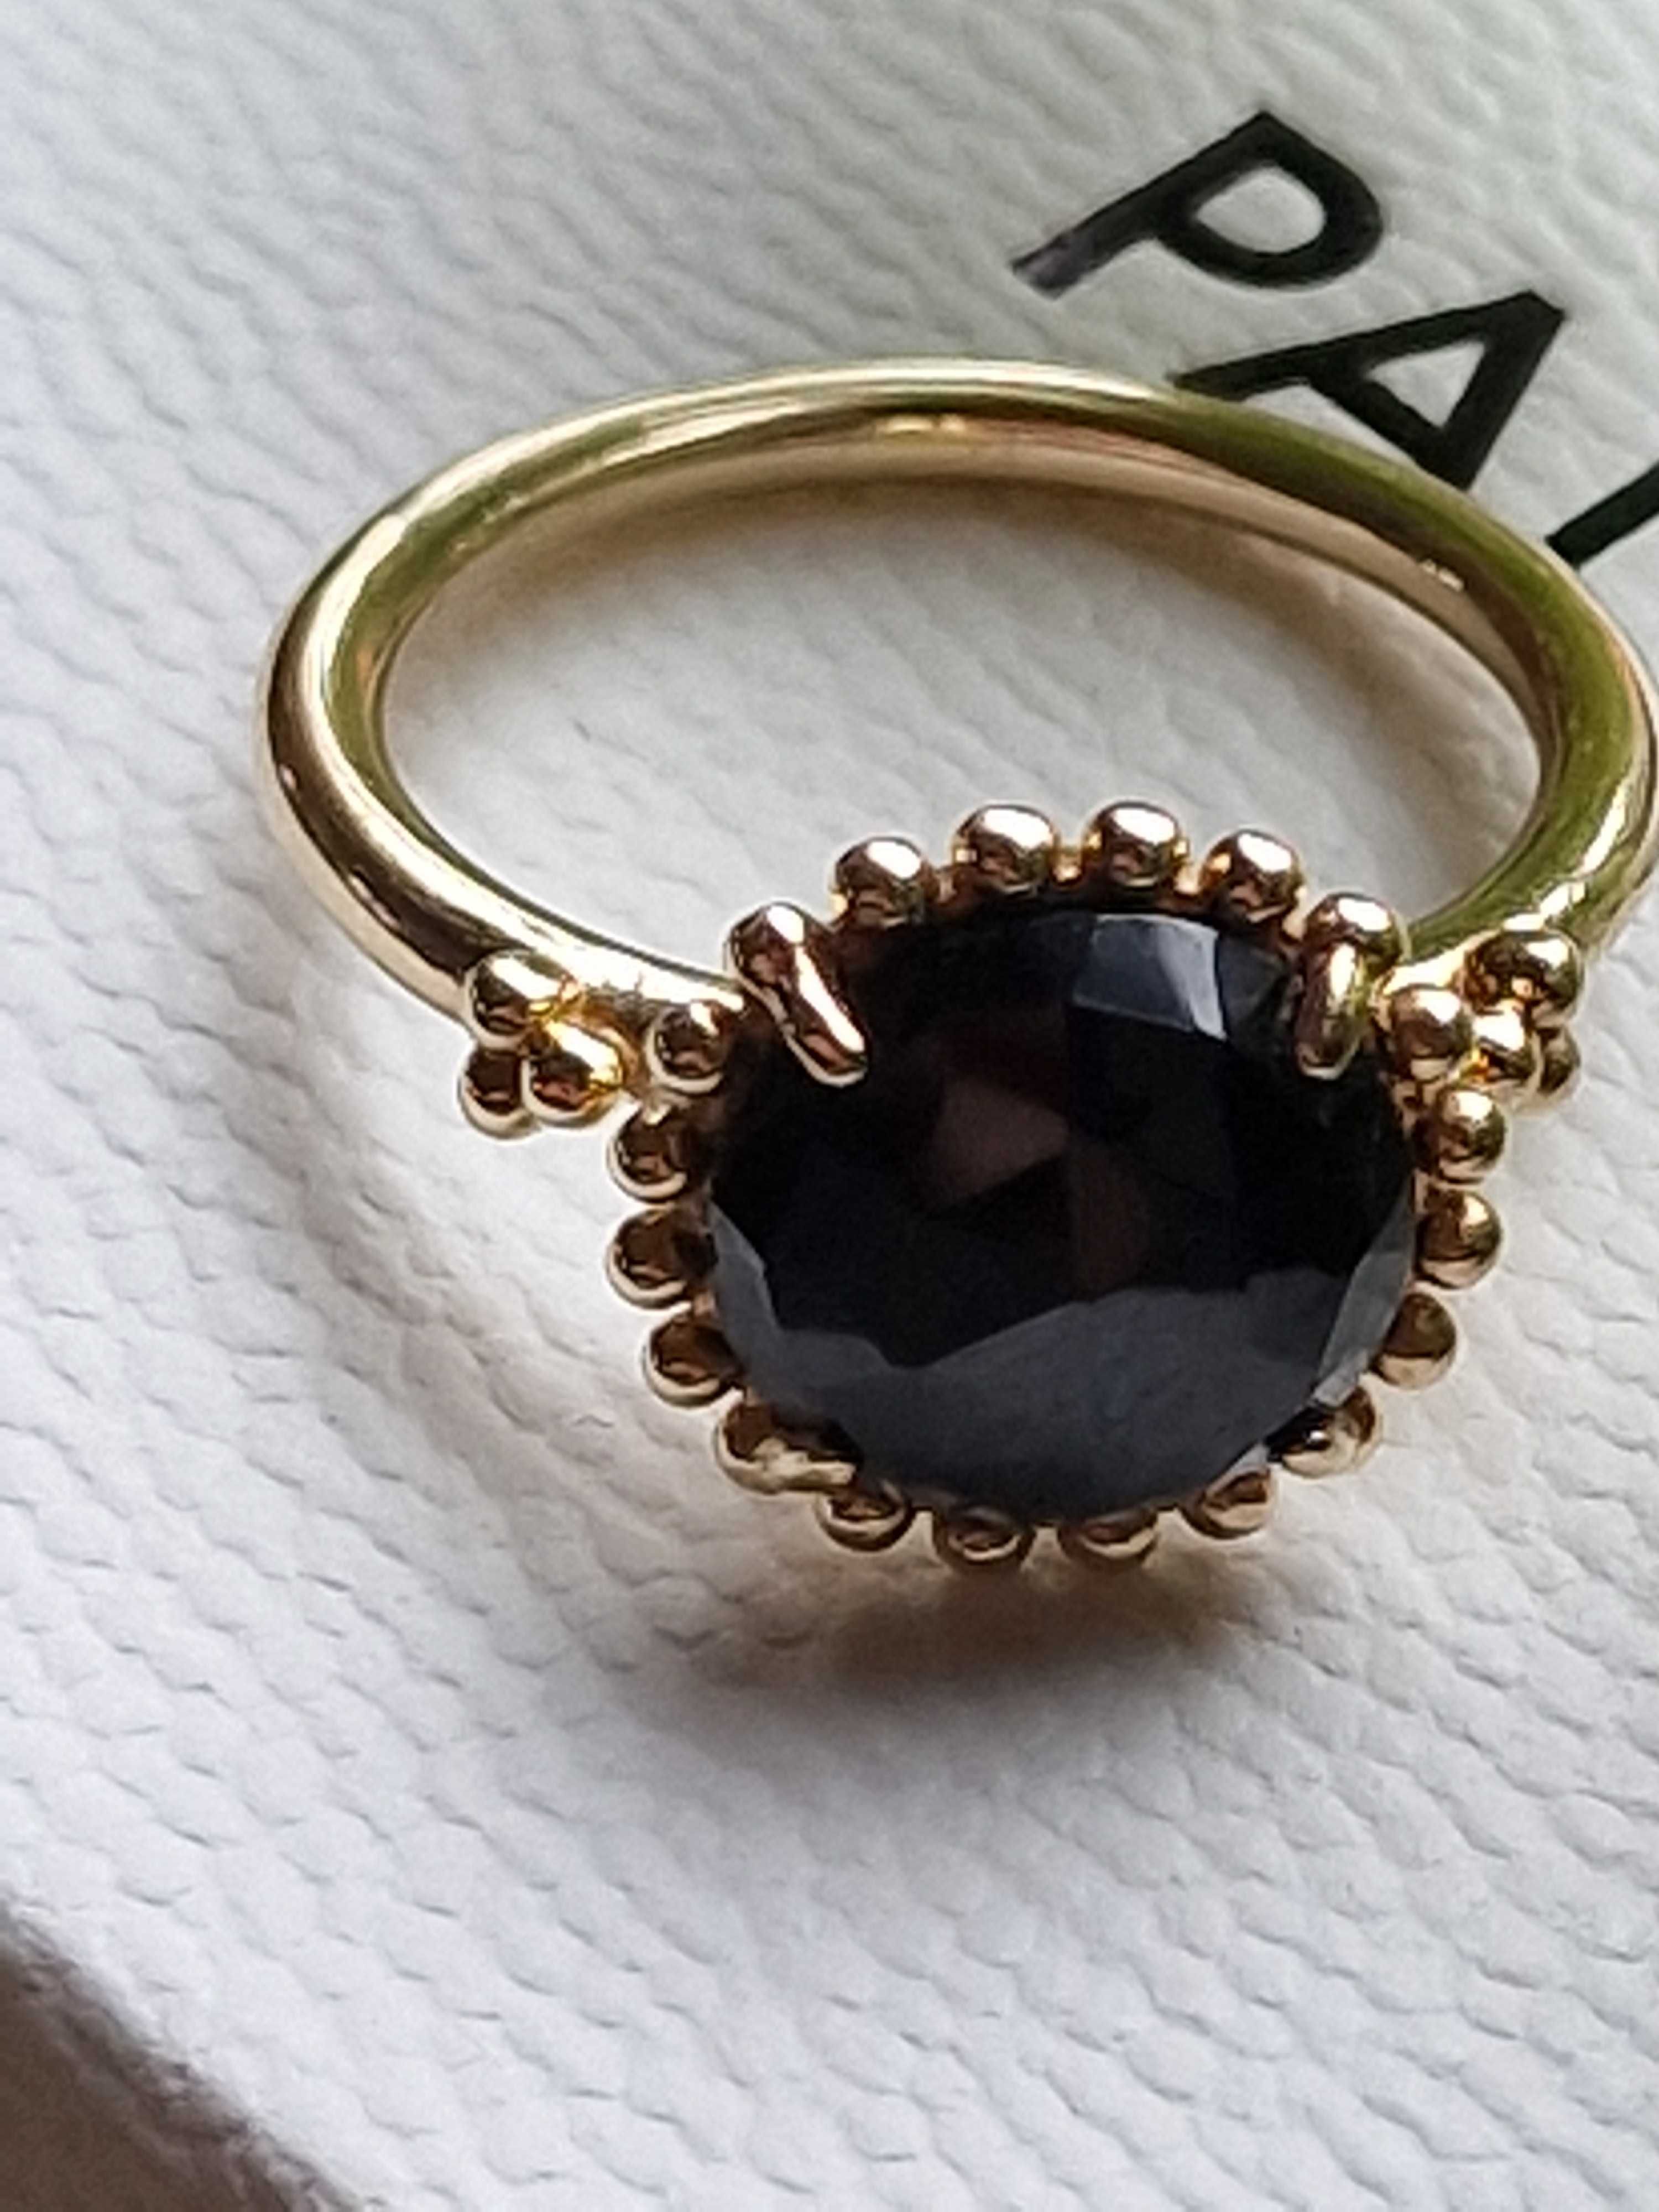 Pandora oryginalny  złoty 585 pierścionek spinel czarny